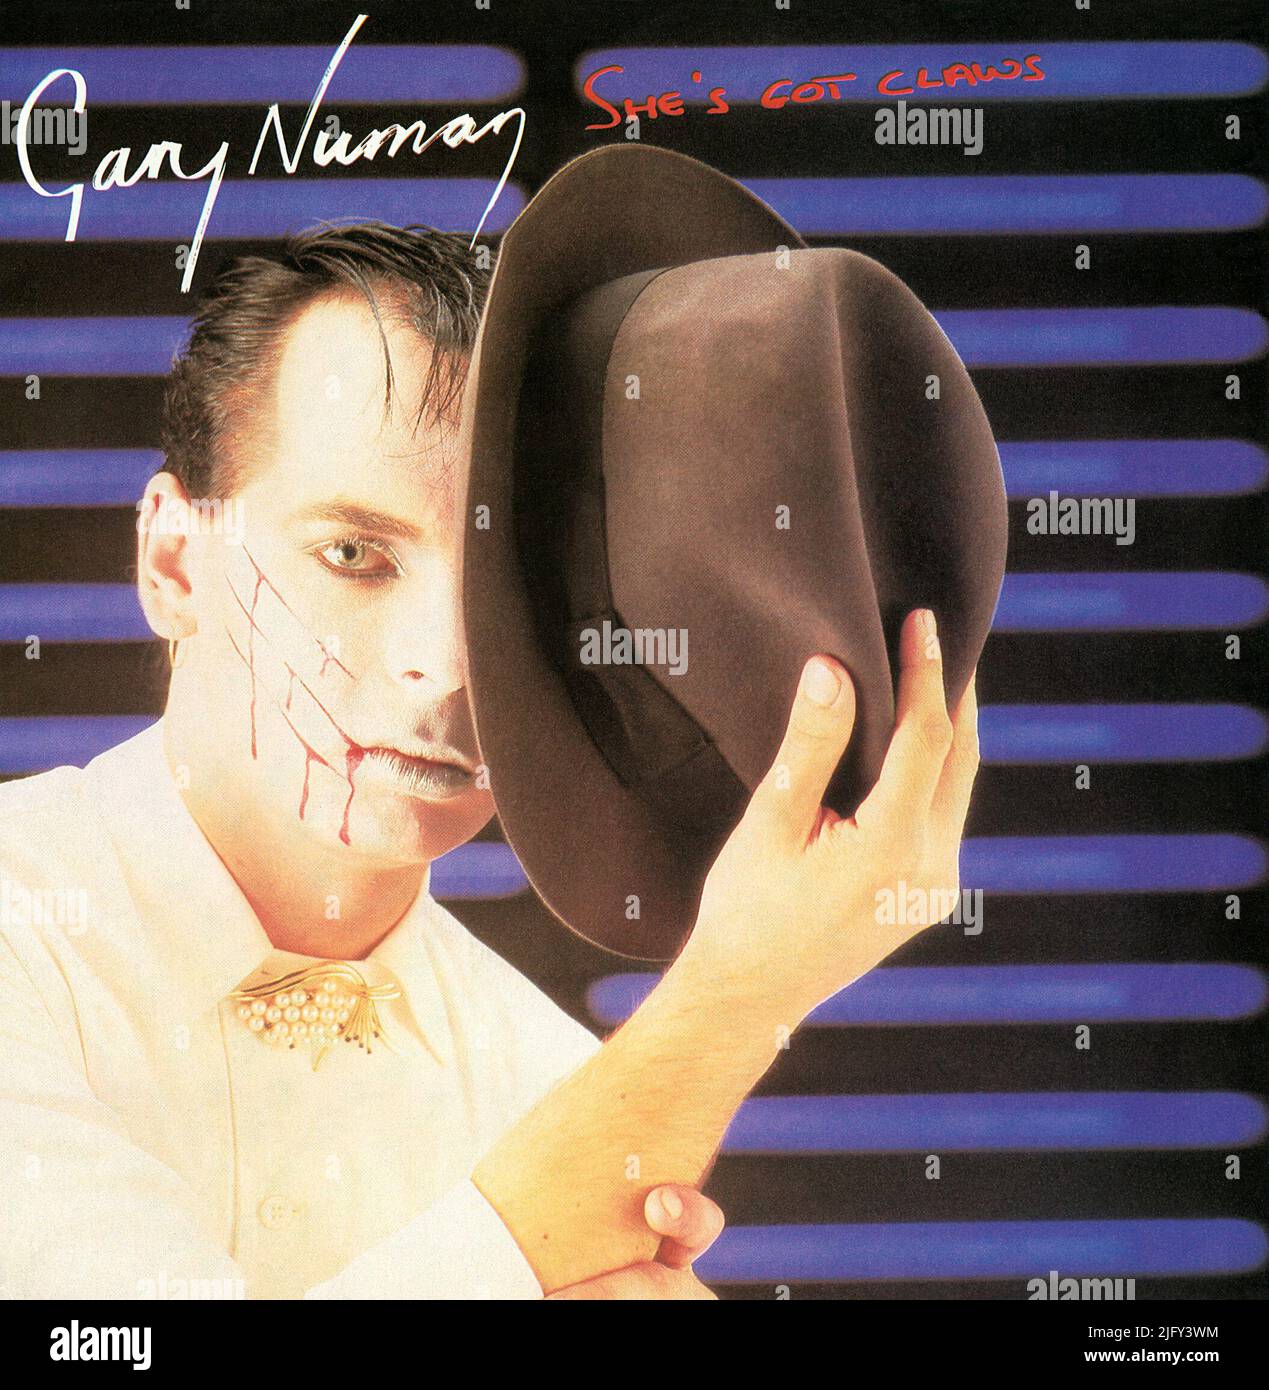 45 RPM 7' etichetta discografica britannica di She's Got Claws di Gary Numan. Scritto e prodotto da Gary Numan. Pubblicato nell'agosto 1981 su Beggars Banquet Records. Foto Stock